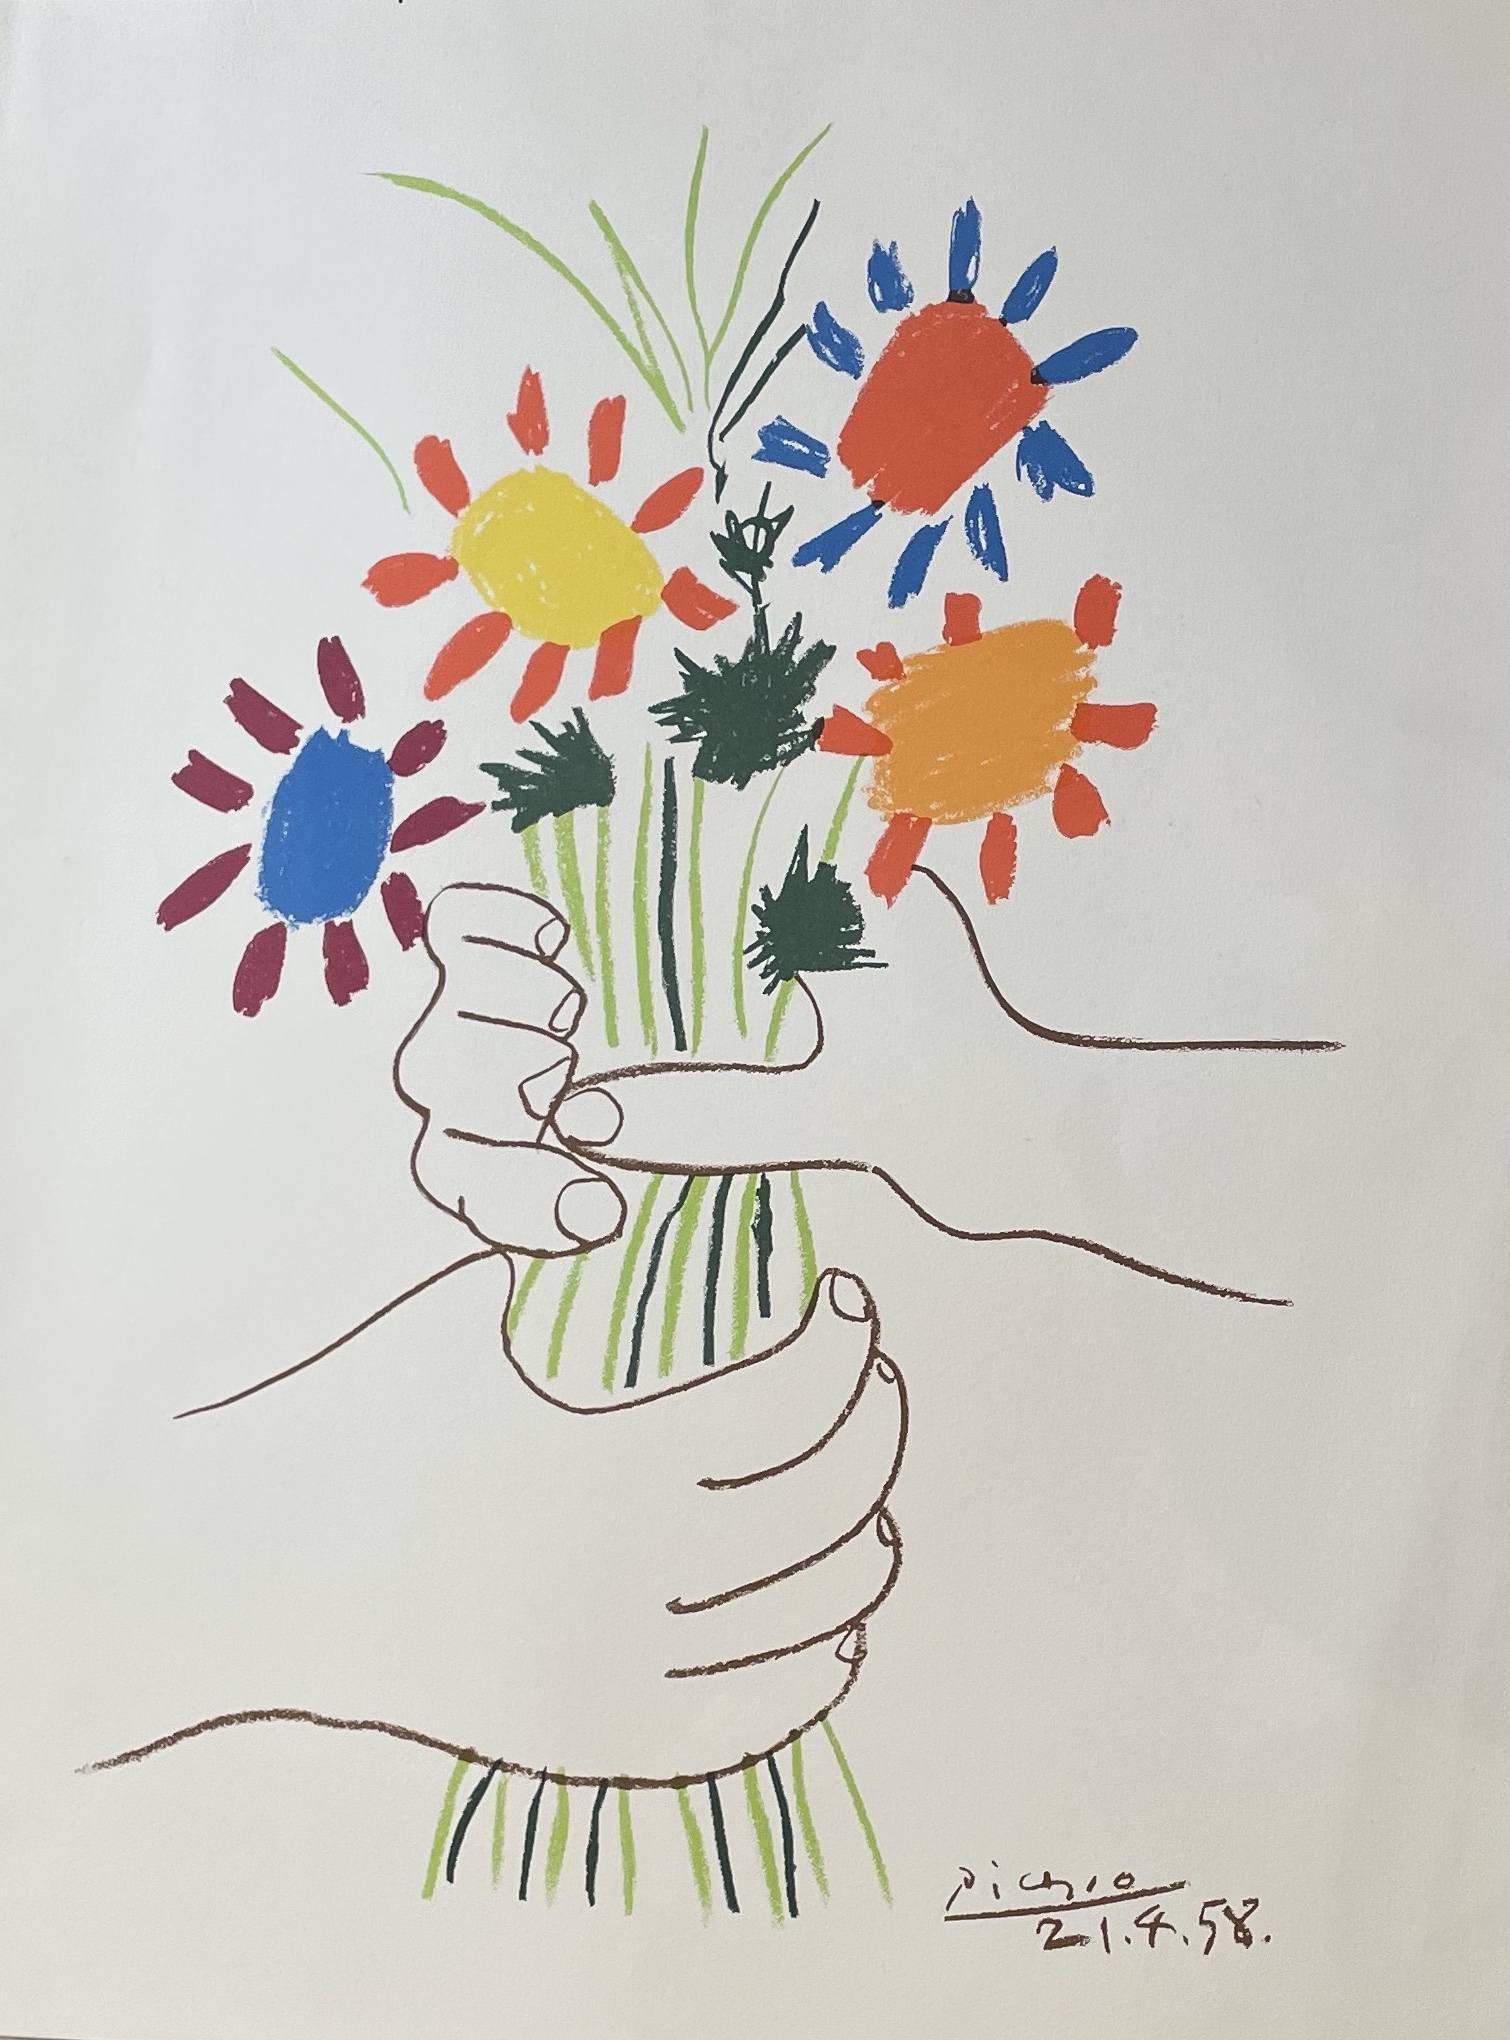 Pablo Picasso d'après, Bouquet de la paix, 1958, lithographie sur vélin , signée et datée dans la planche, éditée par : Mouvement de la Paix